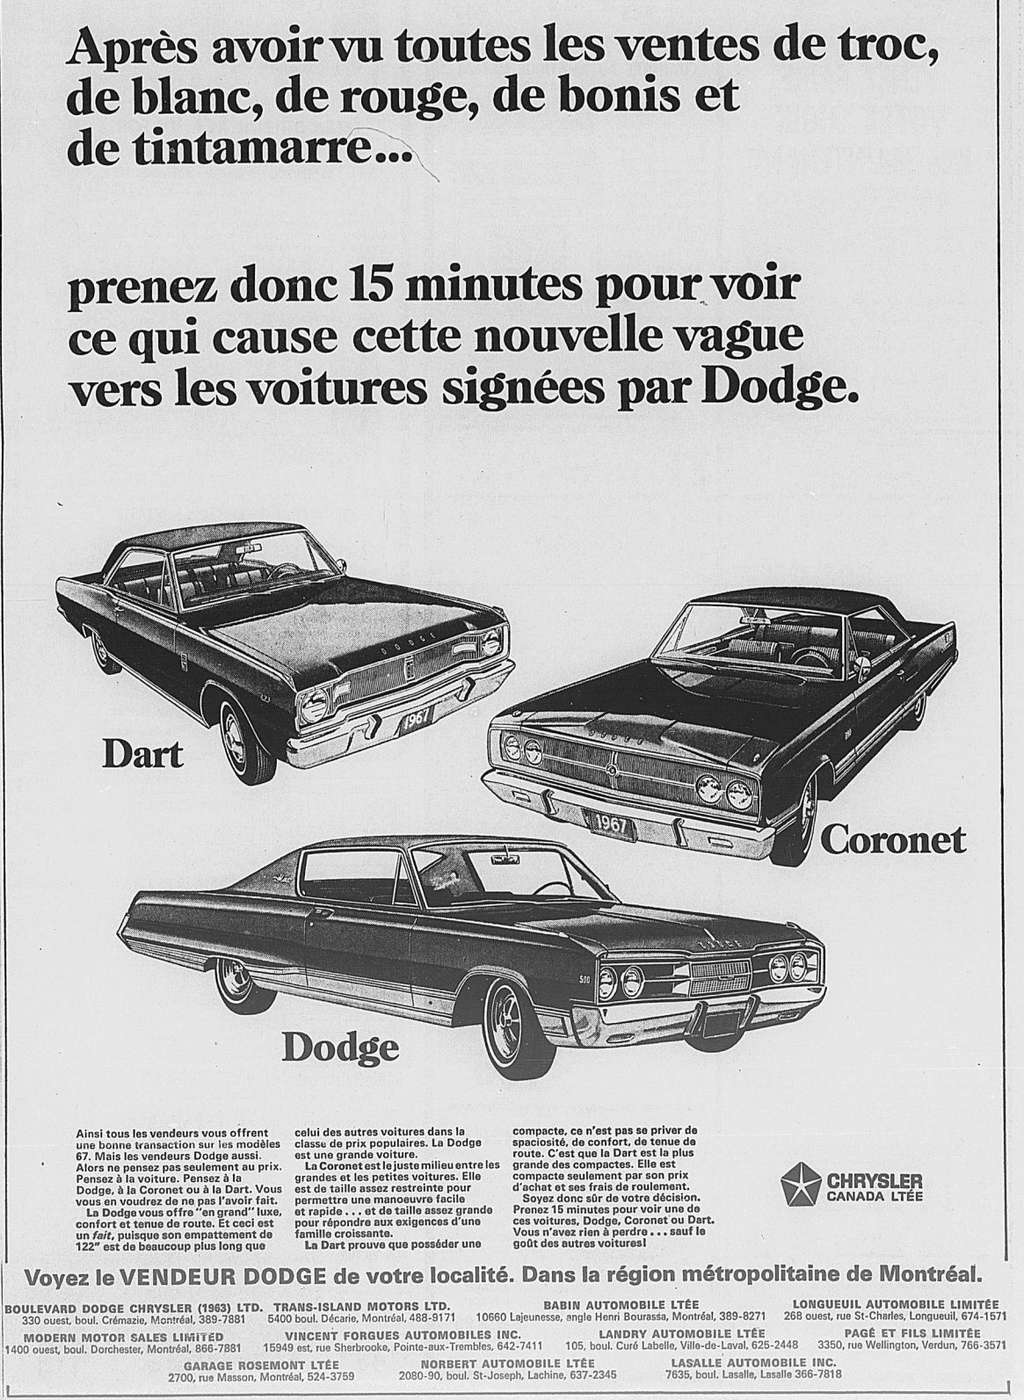 Vieilles Publicitée Dodge/Plymouth/Chrysler au Québec - Page 3 1967_064